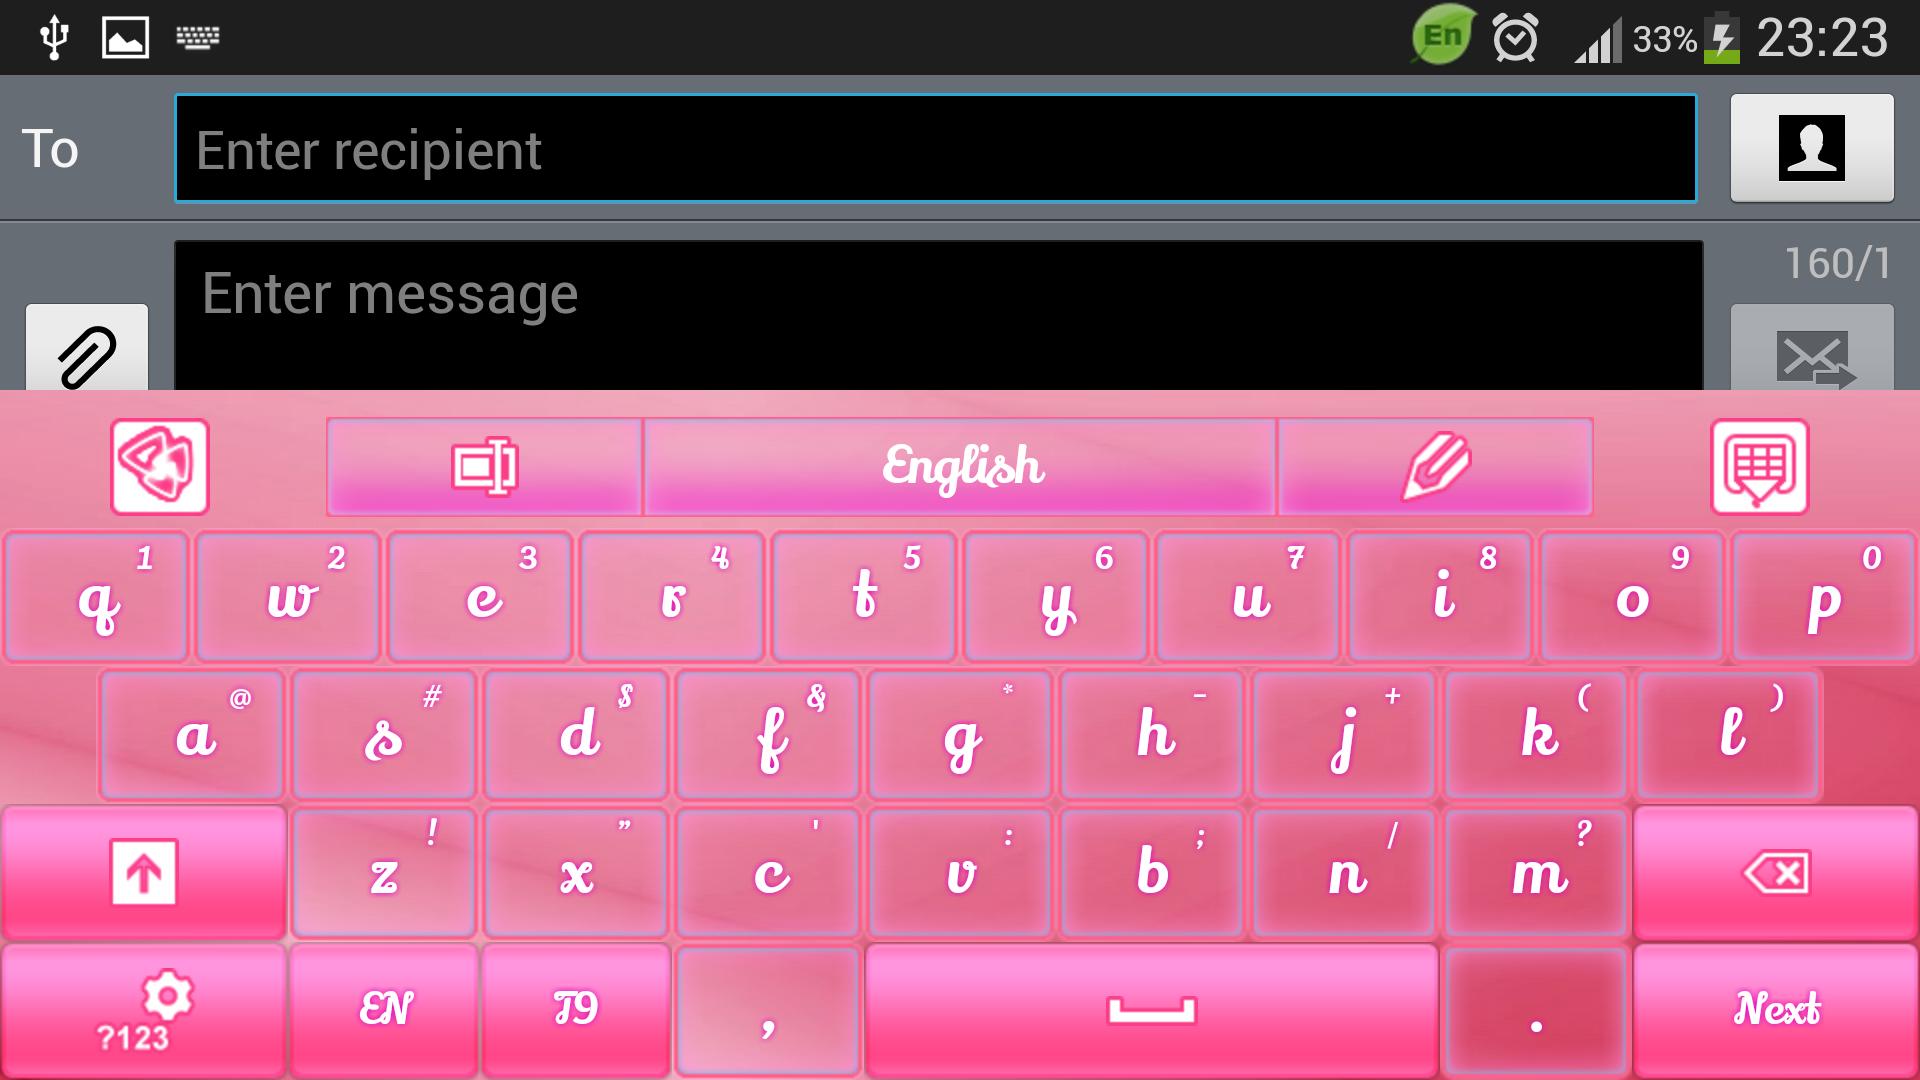 Звук клавиатуры приложение. Keyboard приложение. Pink Keyboard. Wink приложение клавиатура. Приложение для клавиатуры 790.